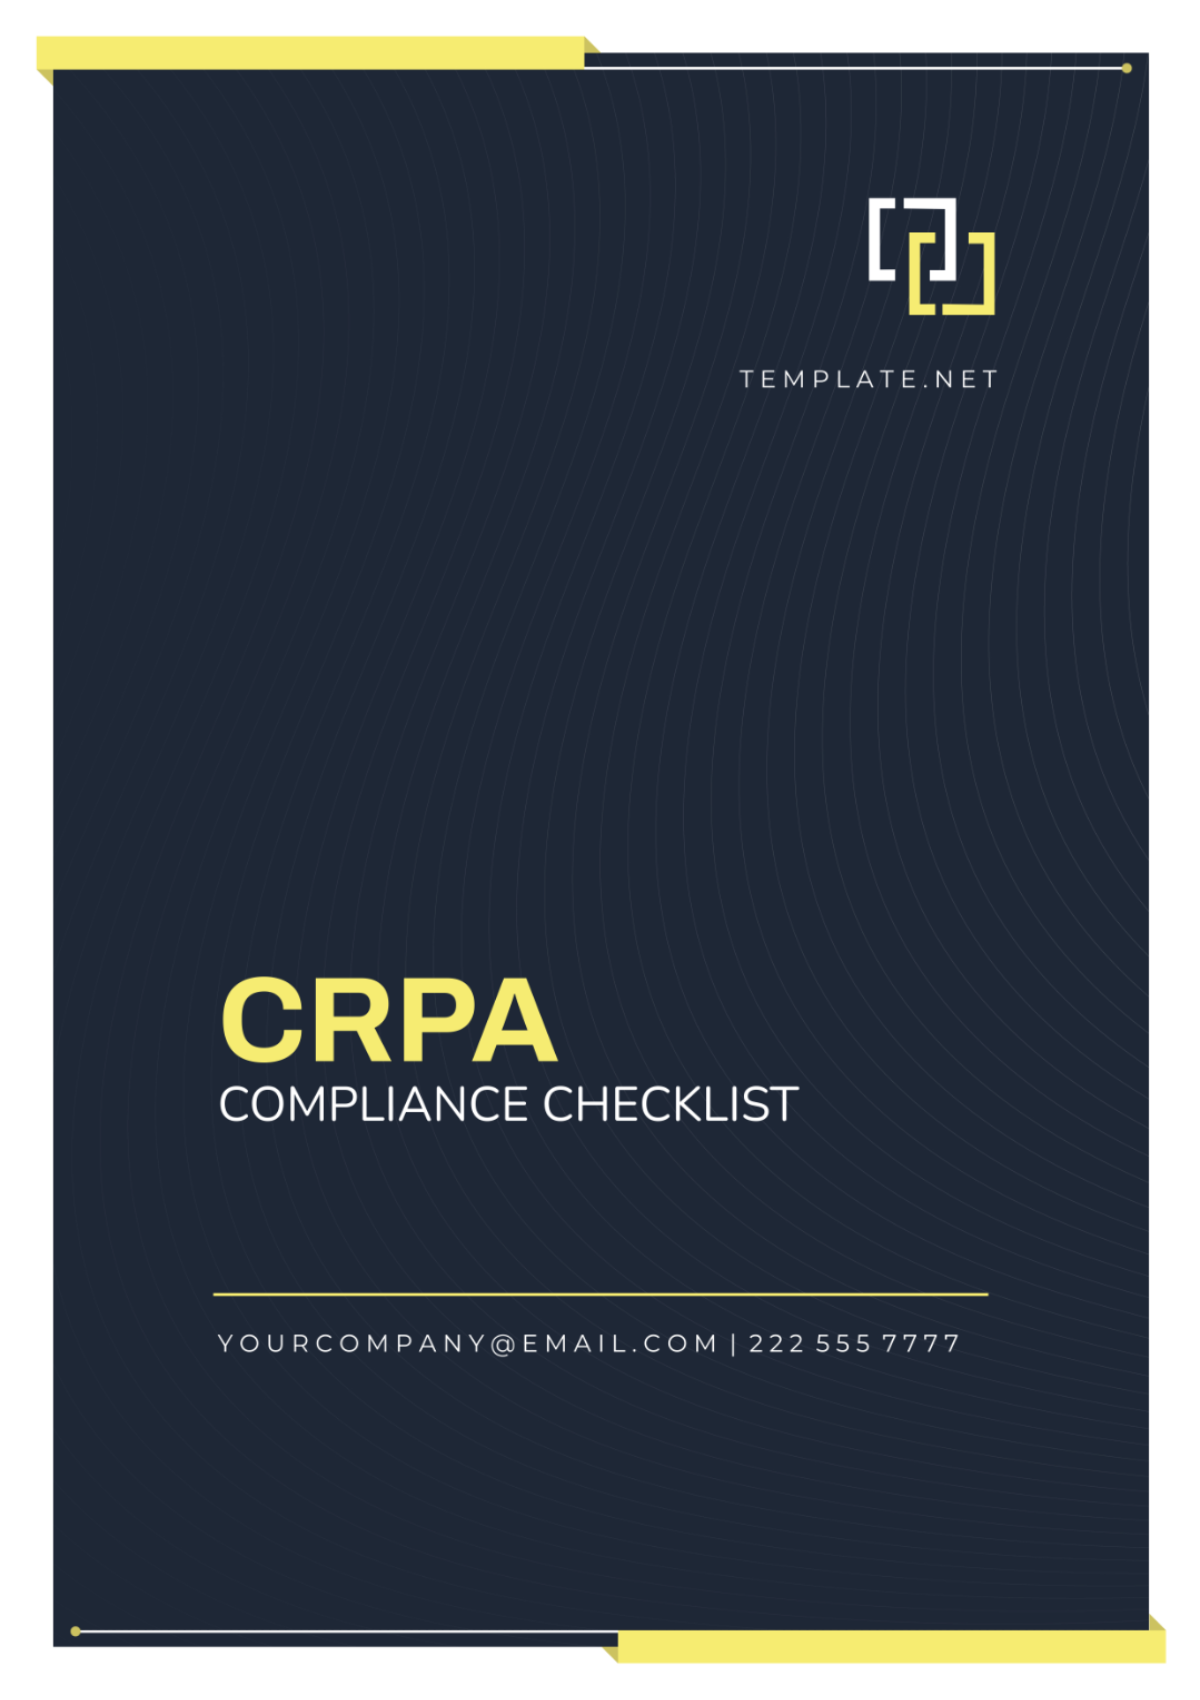 CPRA Compliance Checklist Template